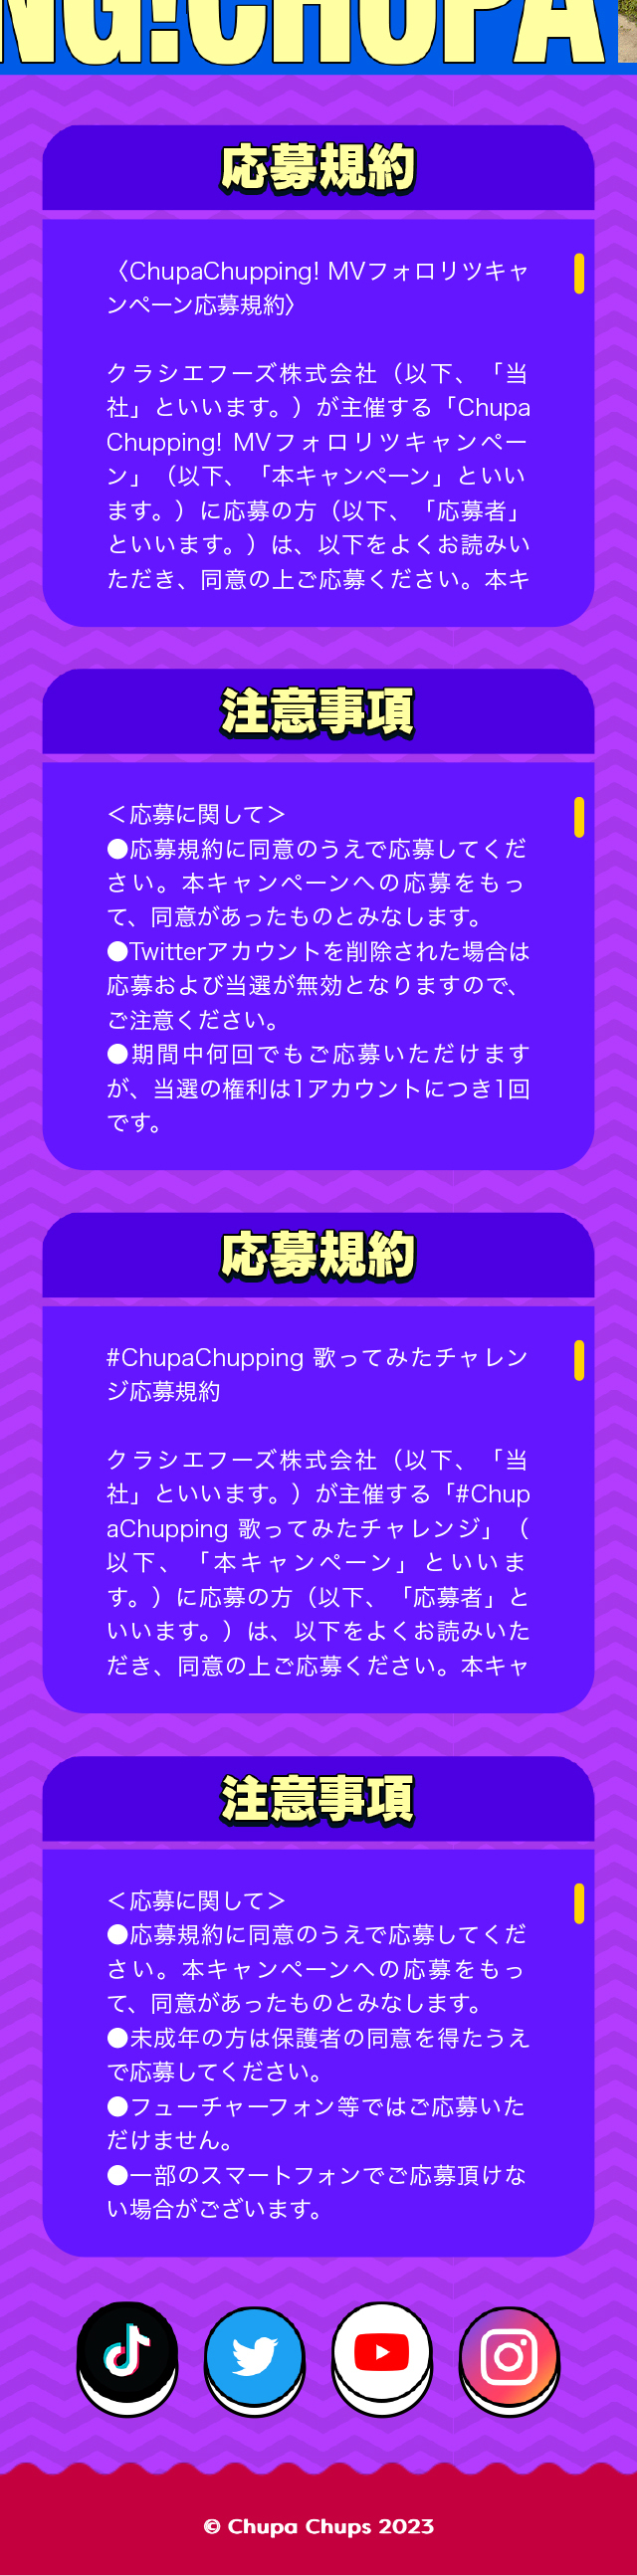 Chupa Chups_sp_2